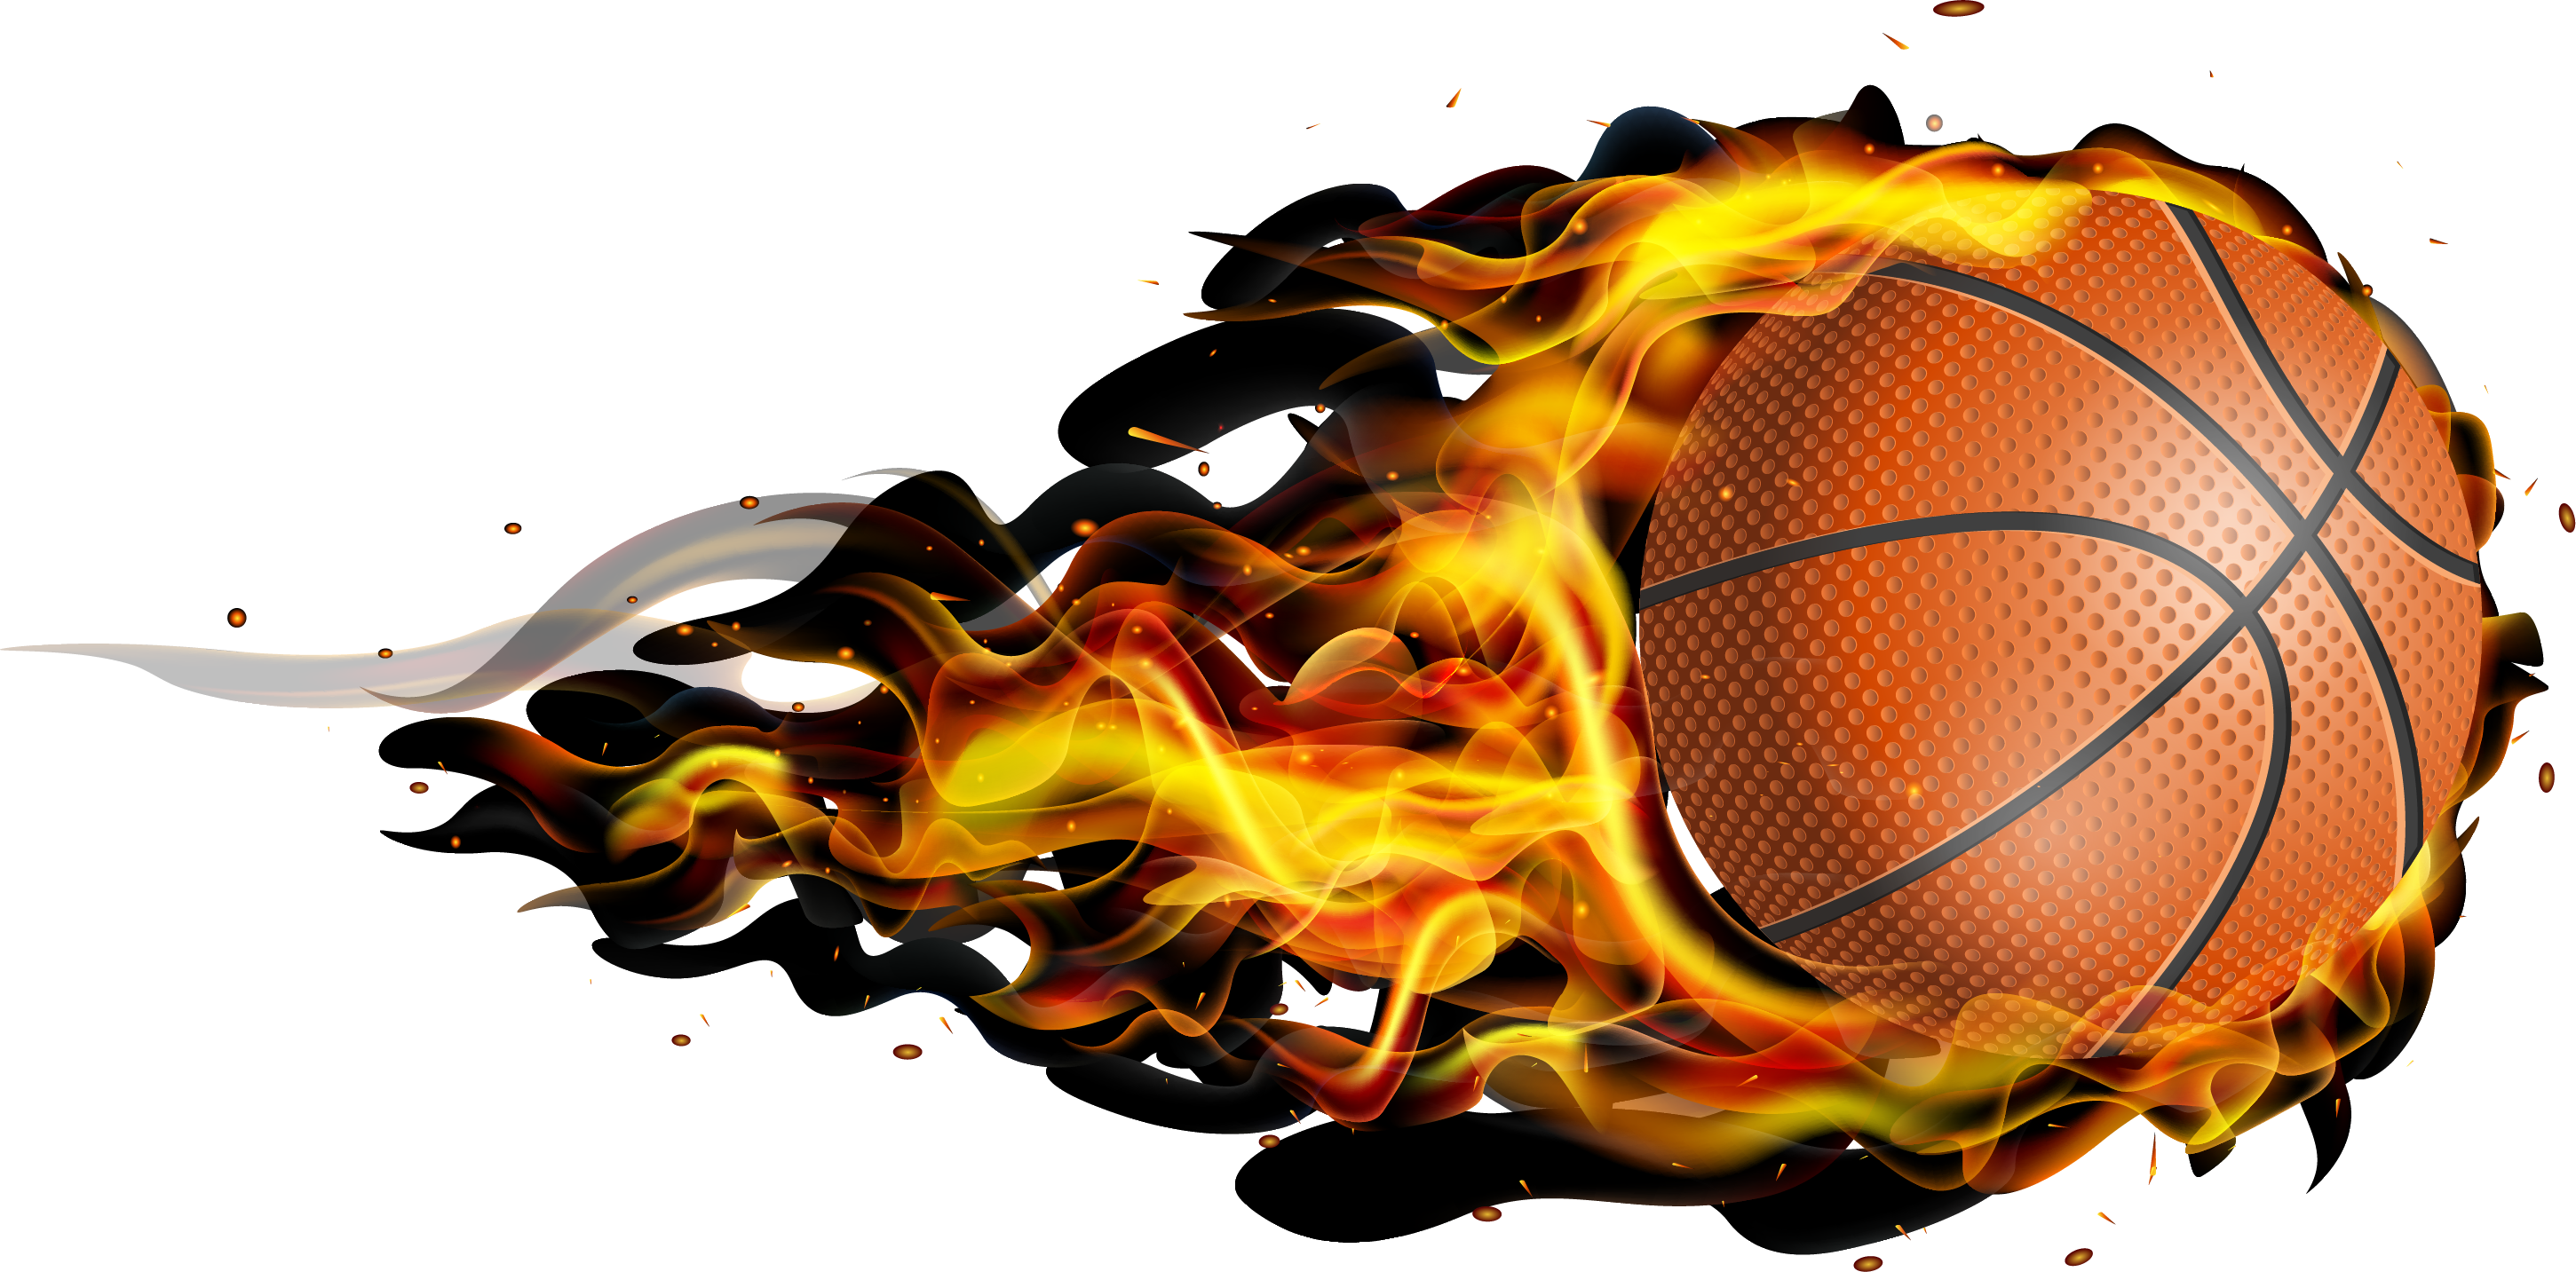 Wallpaper Flame Basketball Image